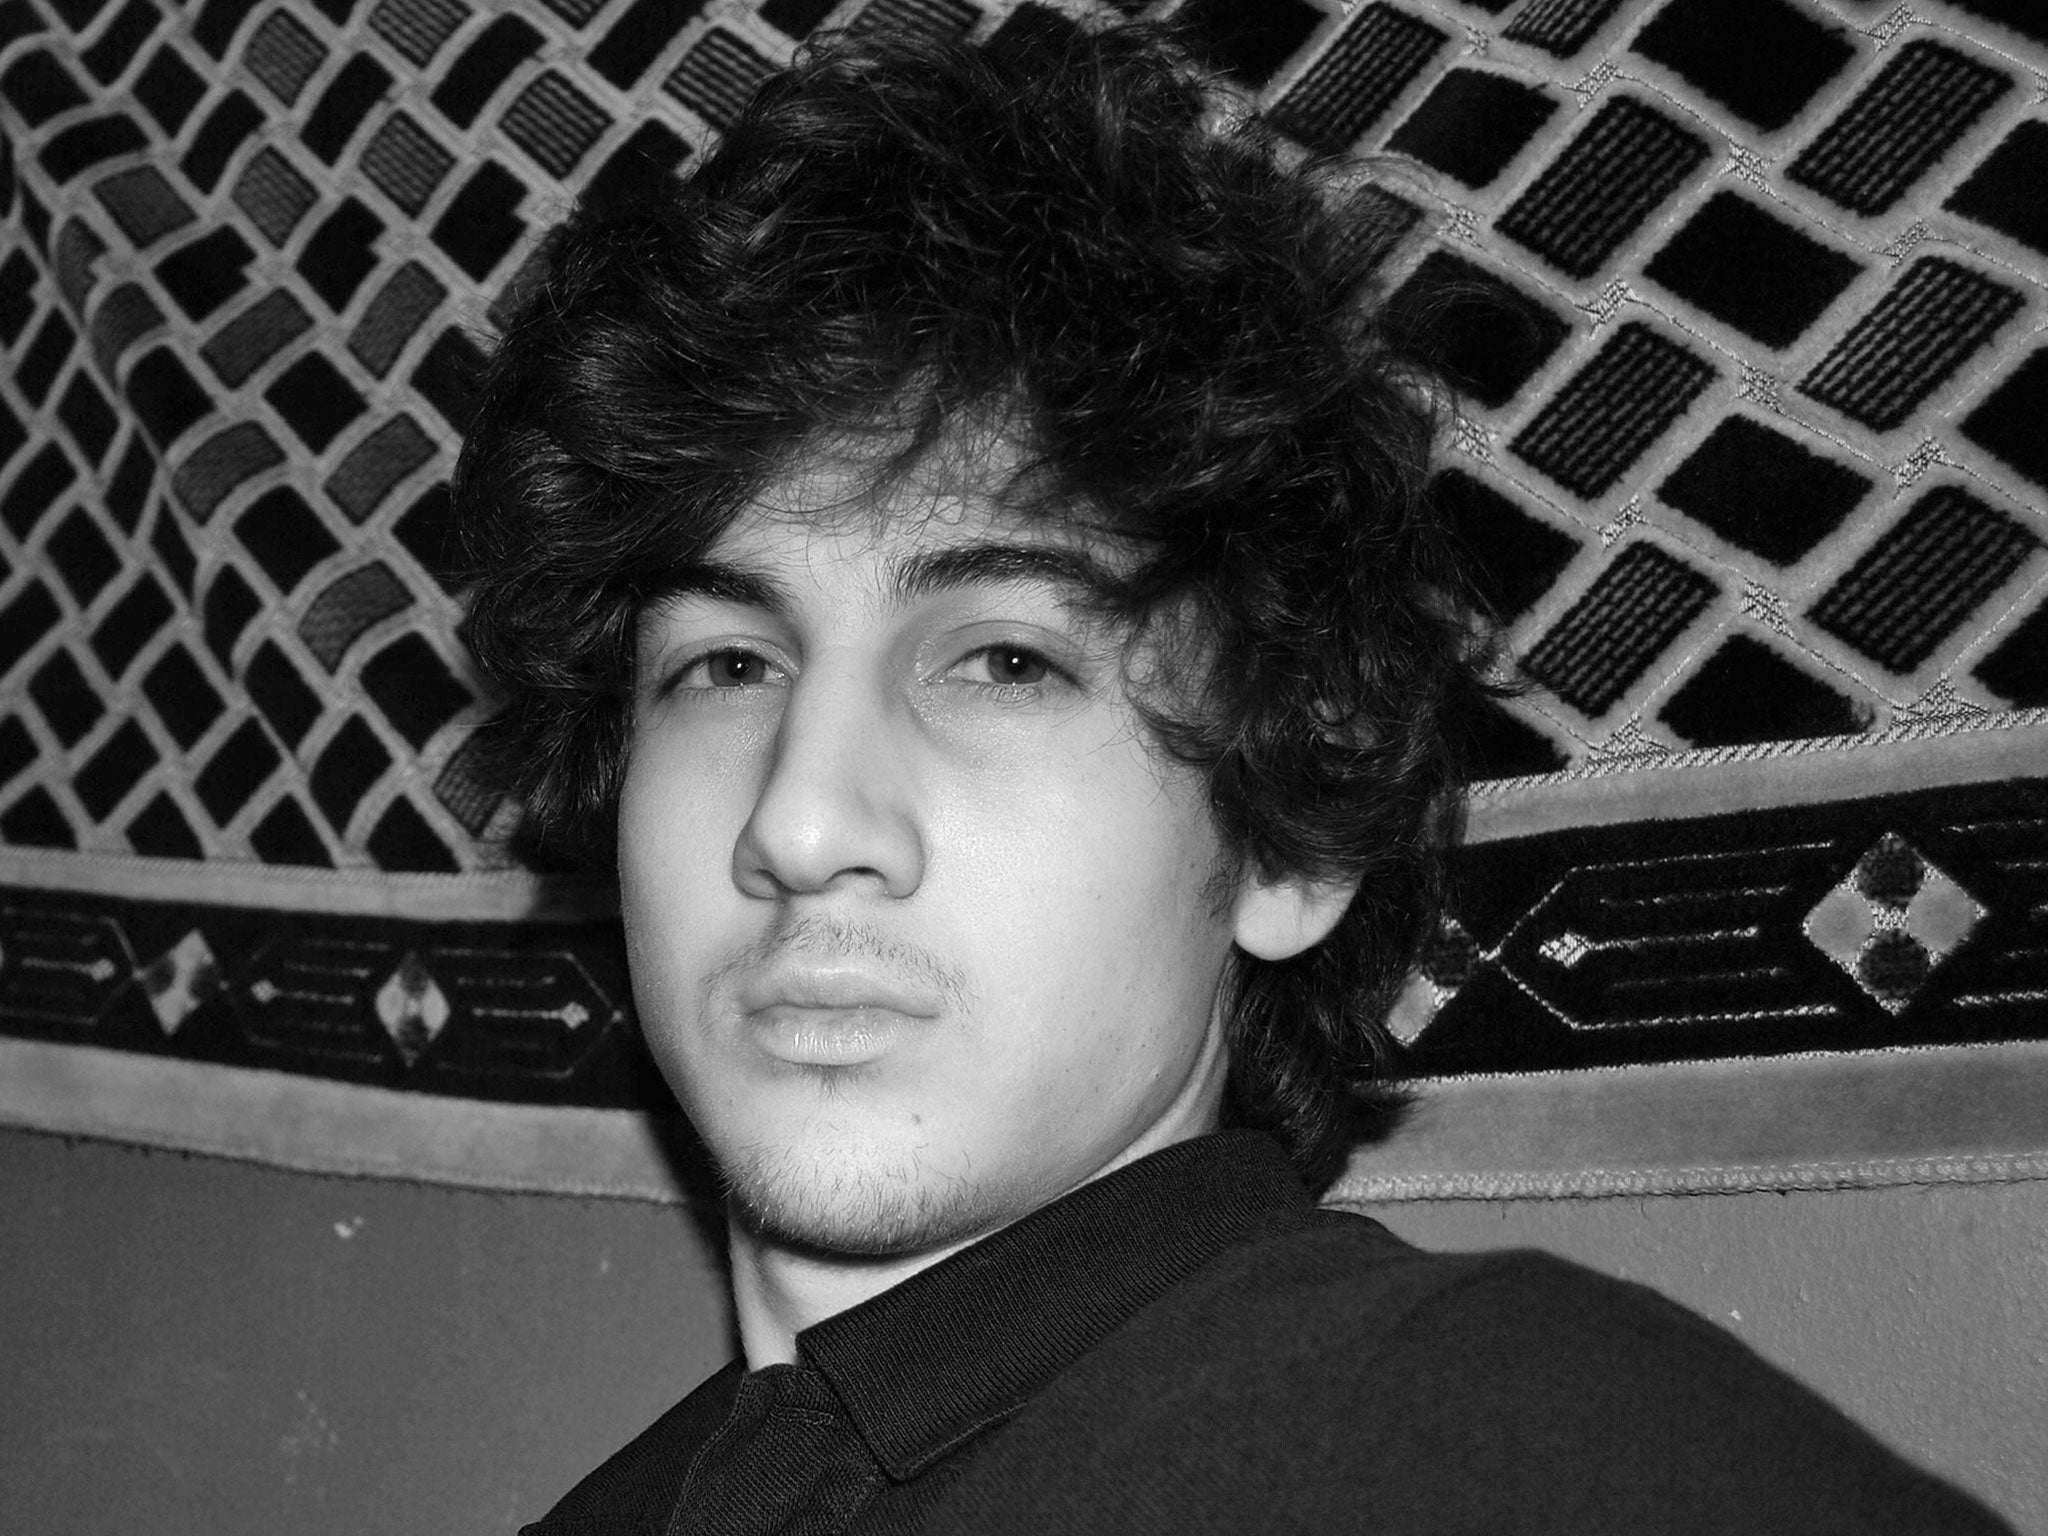 Dzhokhar Tsarnaev, who was captured on Friday